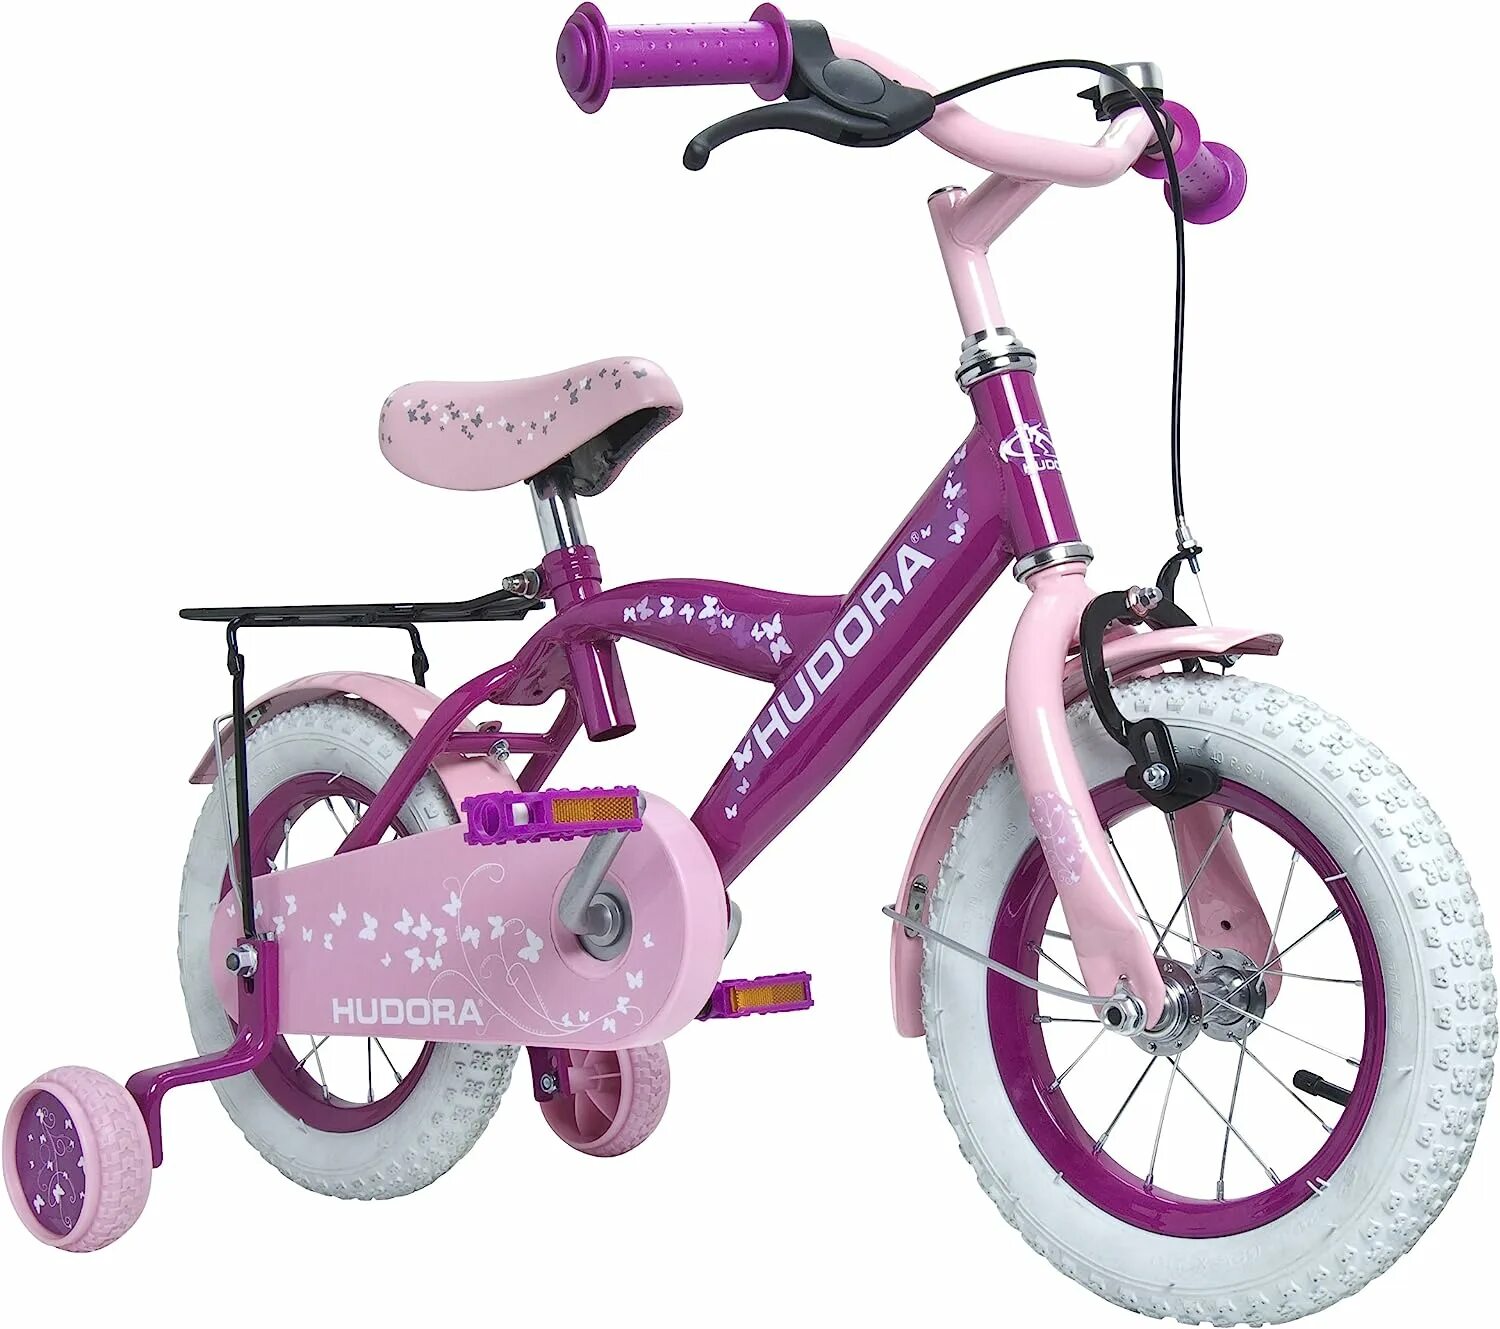 Детский велосипед от 5 лет для девочки. Велосипед Hudora 12. Велосипед Hudora 16. Детские велосипеды для девочек. Детский велосипед для девочки 5 лет.